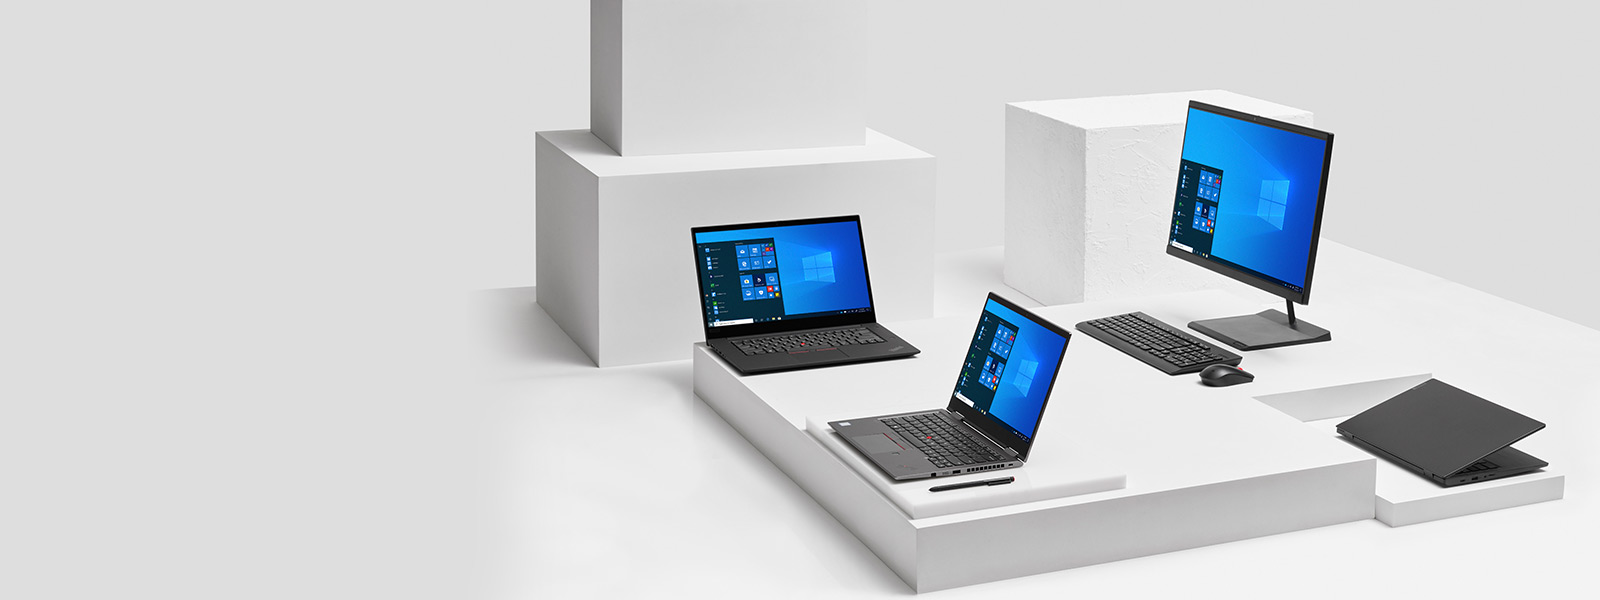 Familia de dispositivos Lenovo con pantallas de inicio de Windows 10 Pro